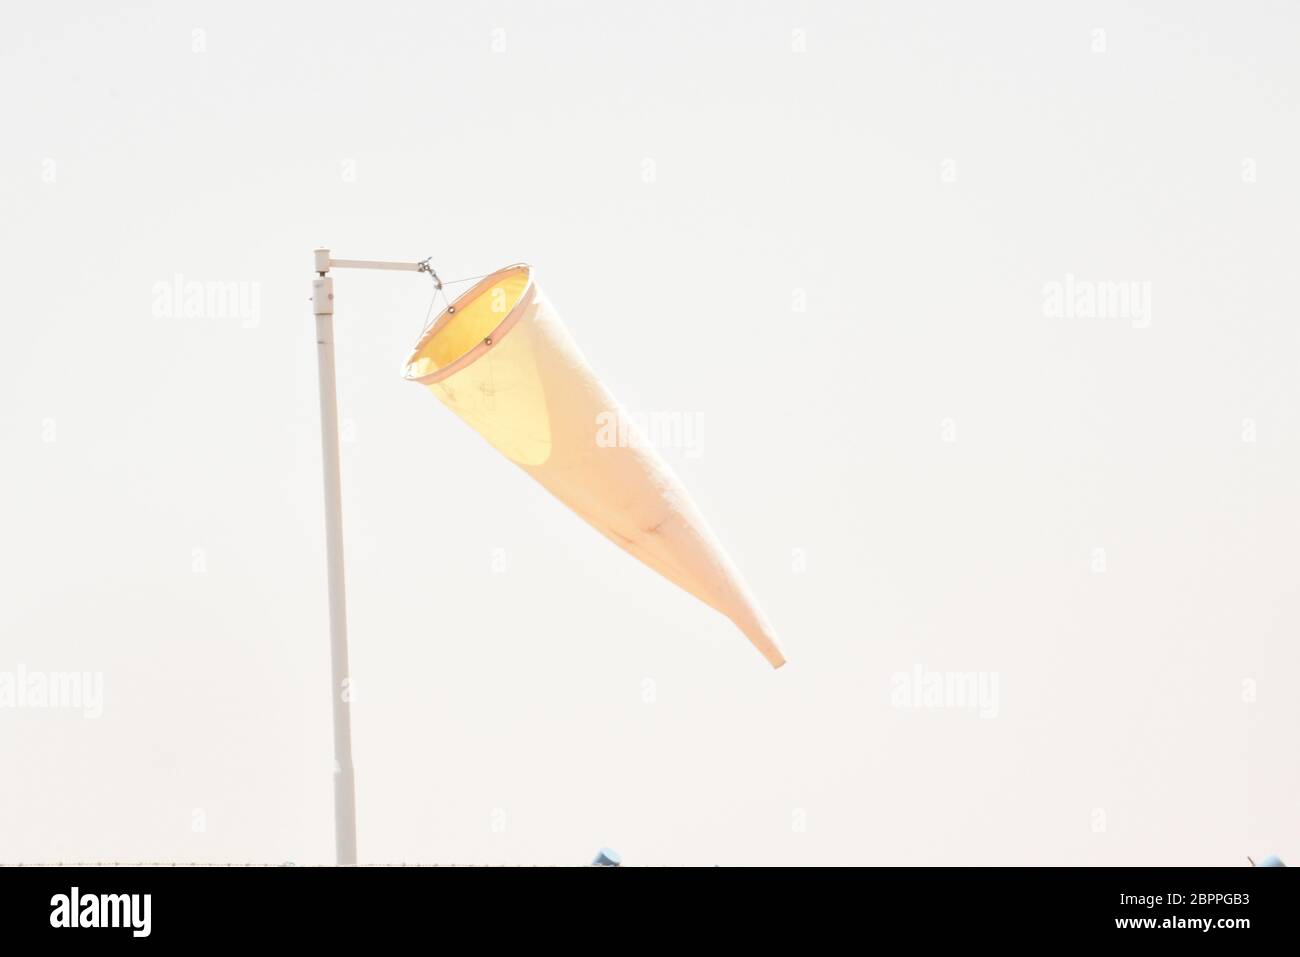 Chaussette de vent orange contre le ciel bleu. Chaussette de vent de l'équipement vérifier la direction du souffle de vent dans la journée et aucun souffle de vent sur ciel couvert nuageux. Banque D'Images